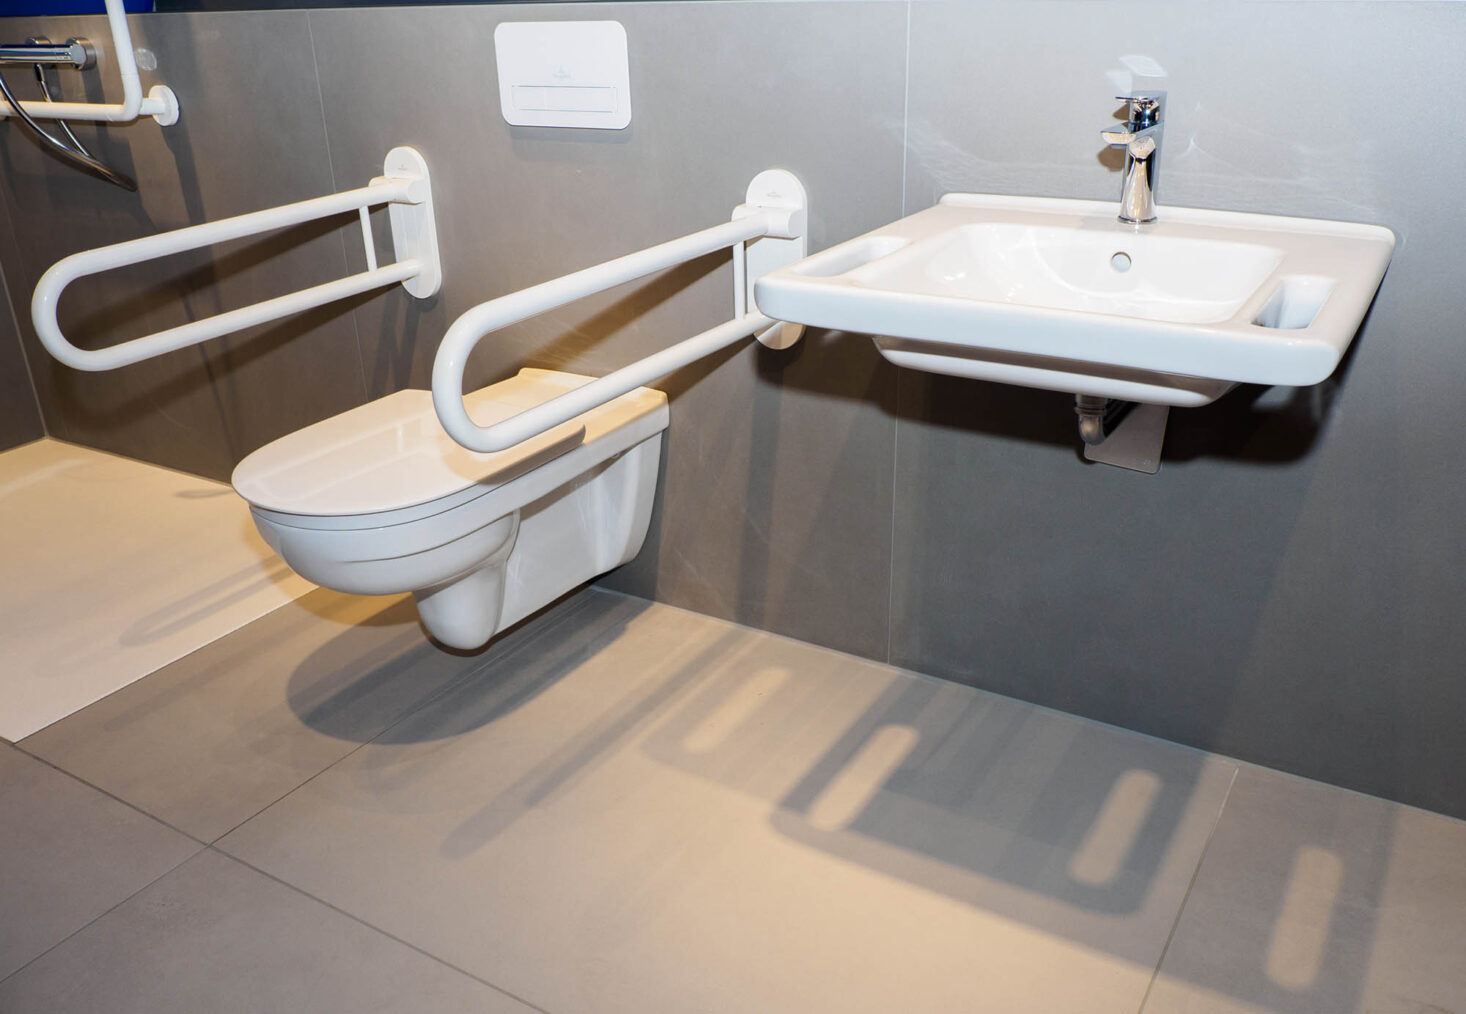 Bilde av baderomsinnredning på messestand, med toalett med håndtak.